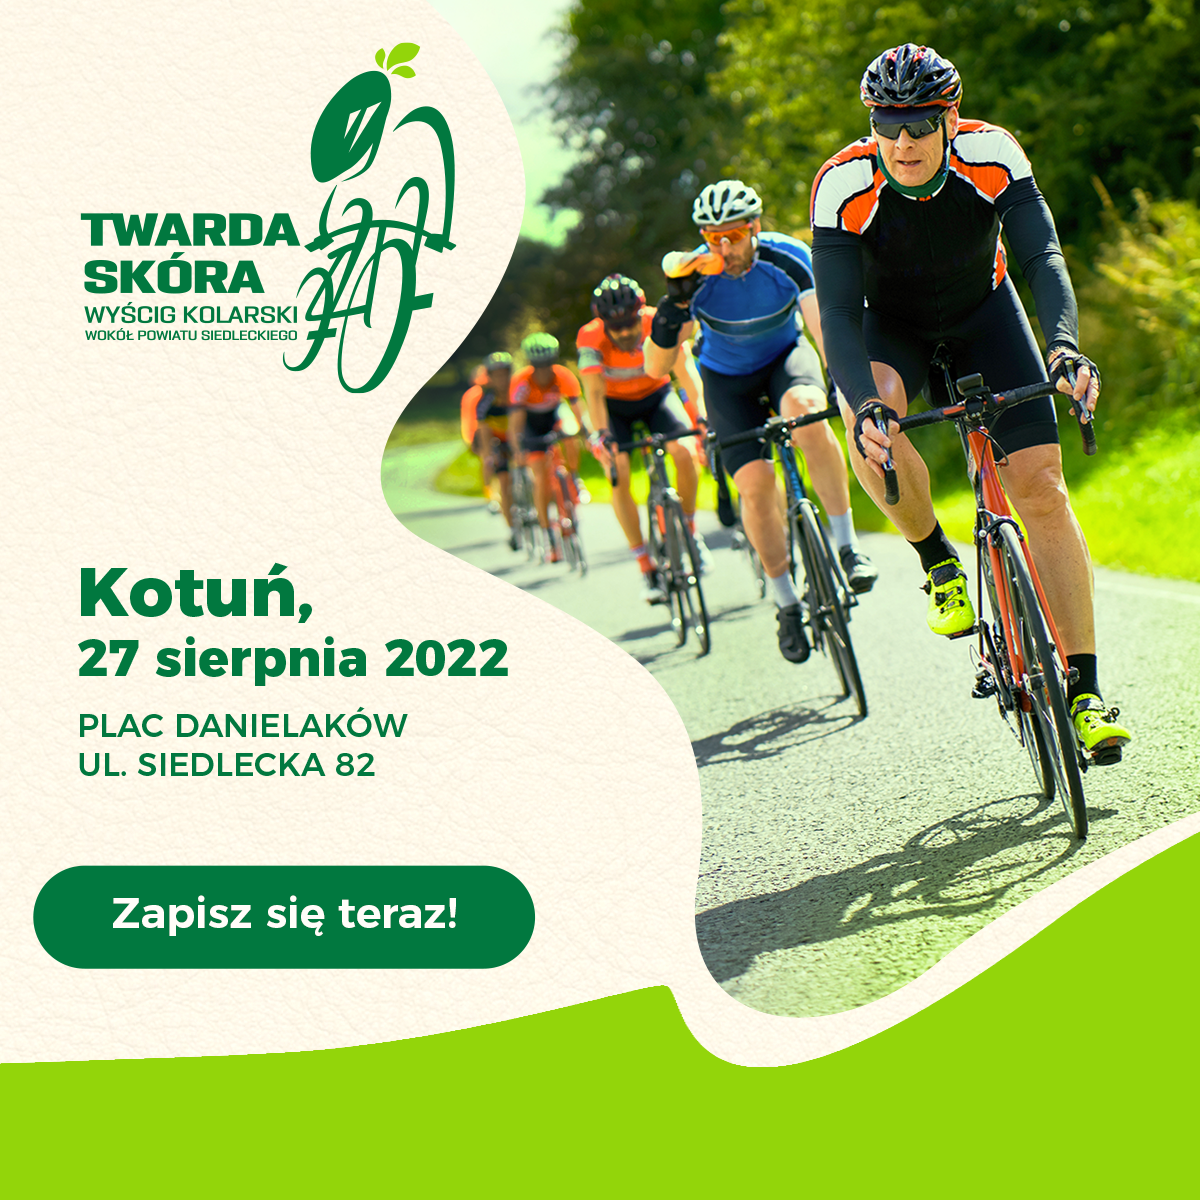 plakat promujący wyścig kolarski "Twarda Skóra" który odbędzie się 27 sierpnia. 